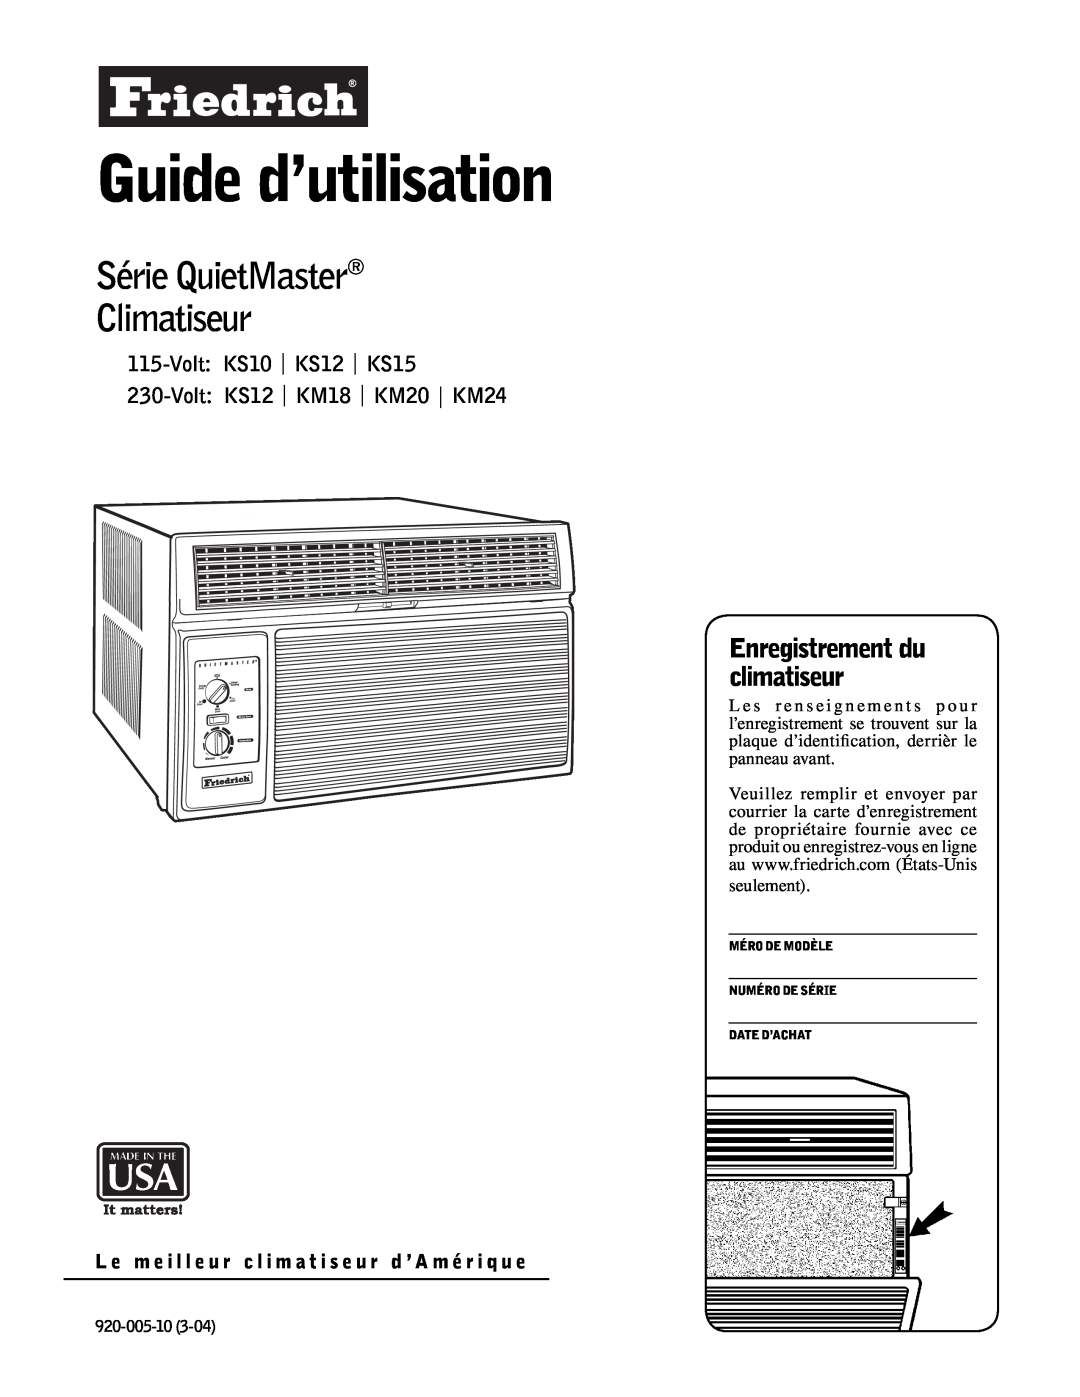 Friedrich KM20 Guide d’utilisation, Série QuietMaster Climatiseur, Enregistrement du climatiseur, Volt KS10 KS12 KS15 